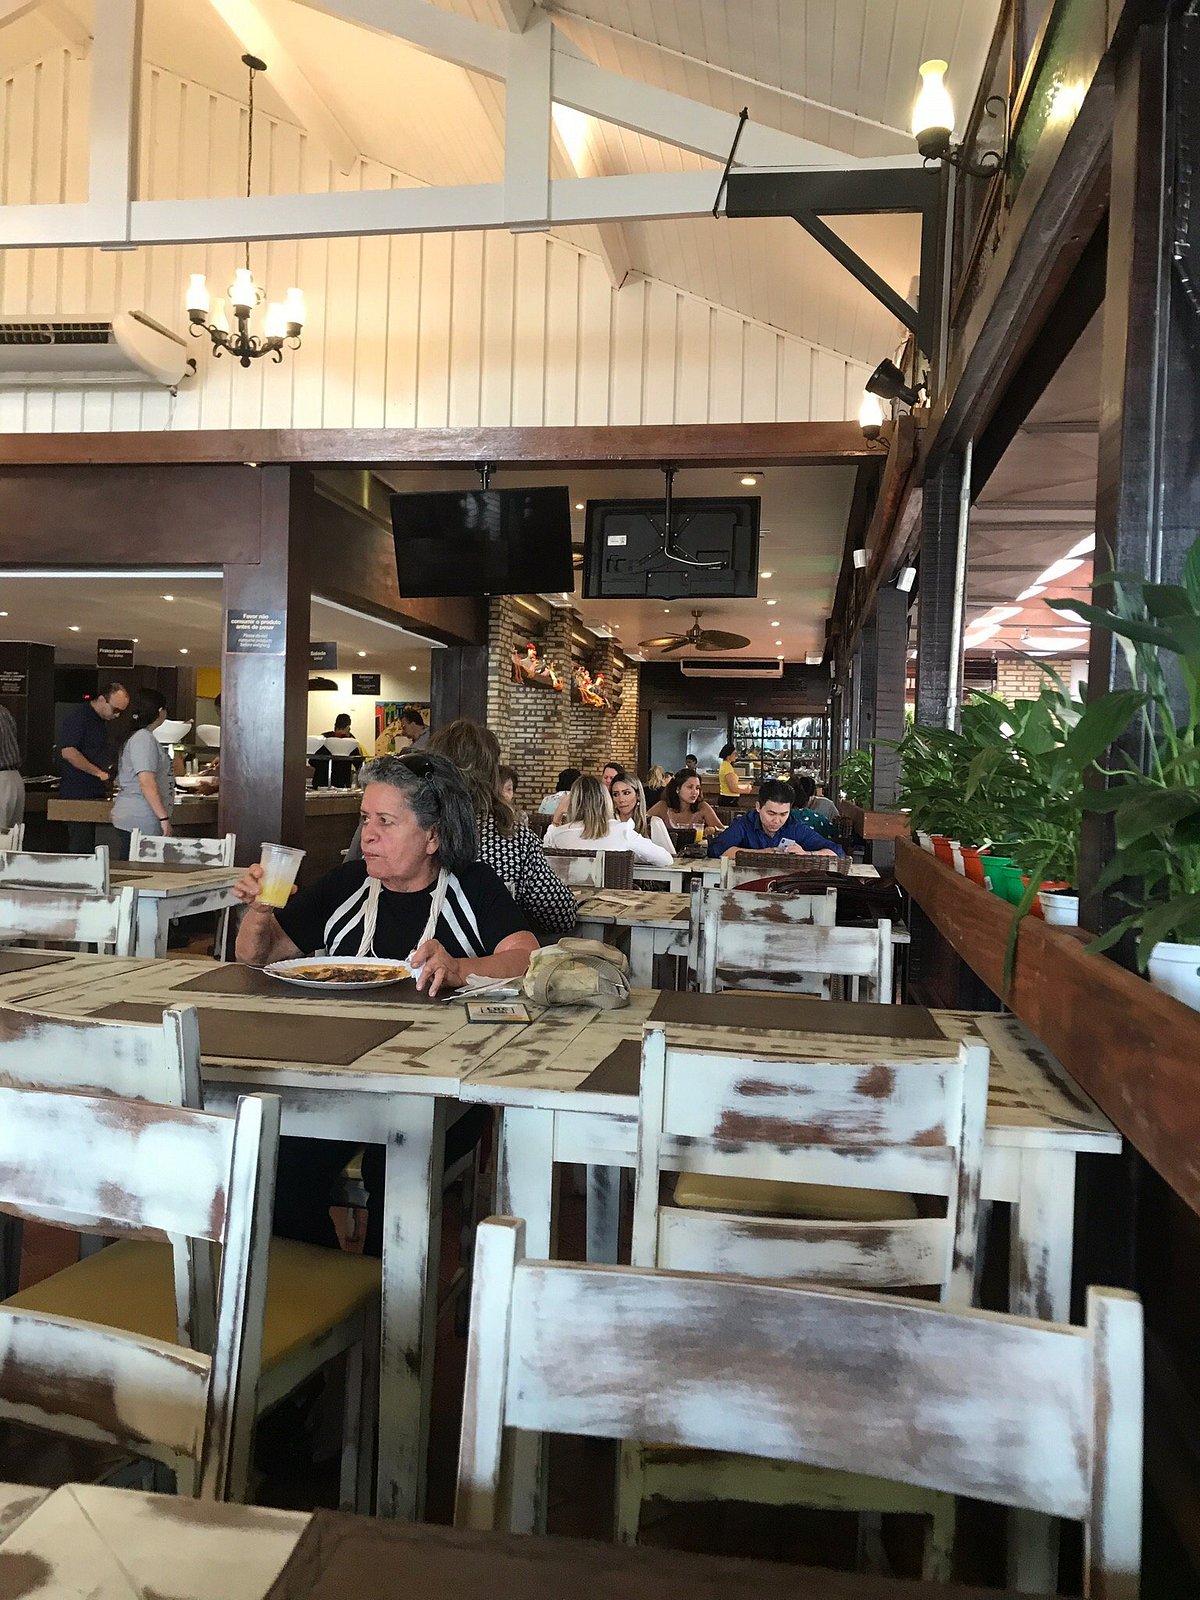 G1 - À prova de modismos, restaurantes em Cuiabá sobrevivem ao tempo -  notícias em Mato Grosso